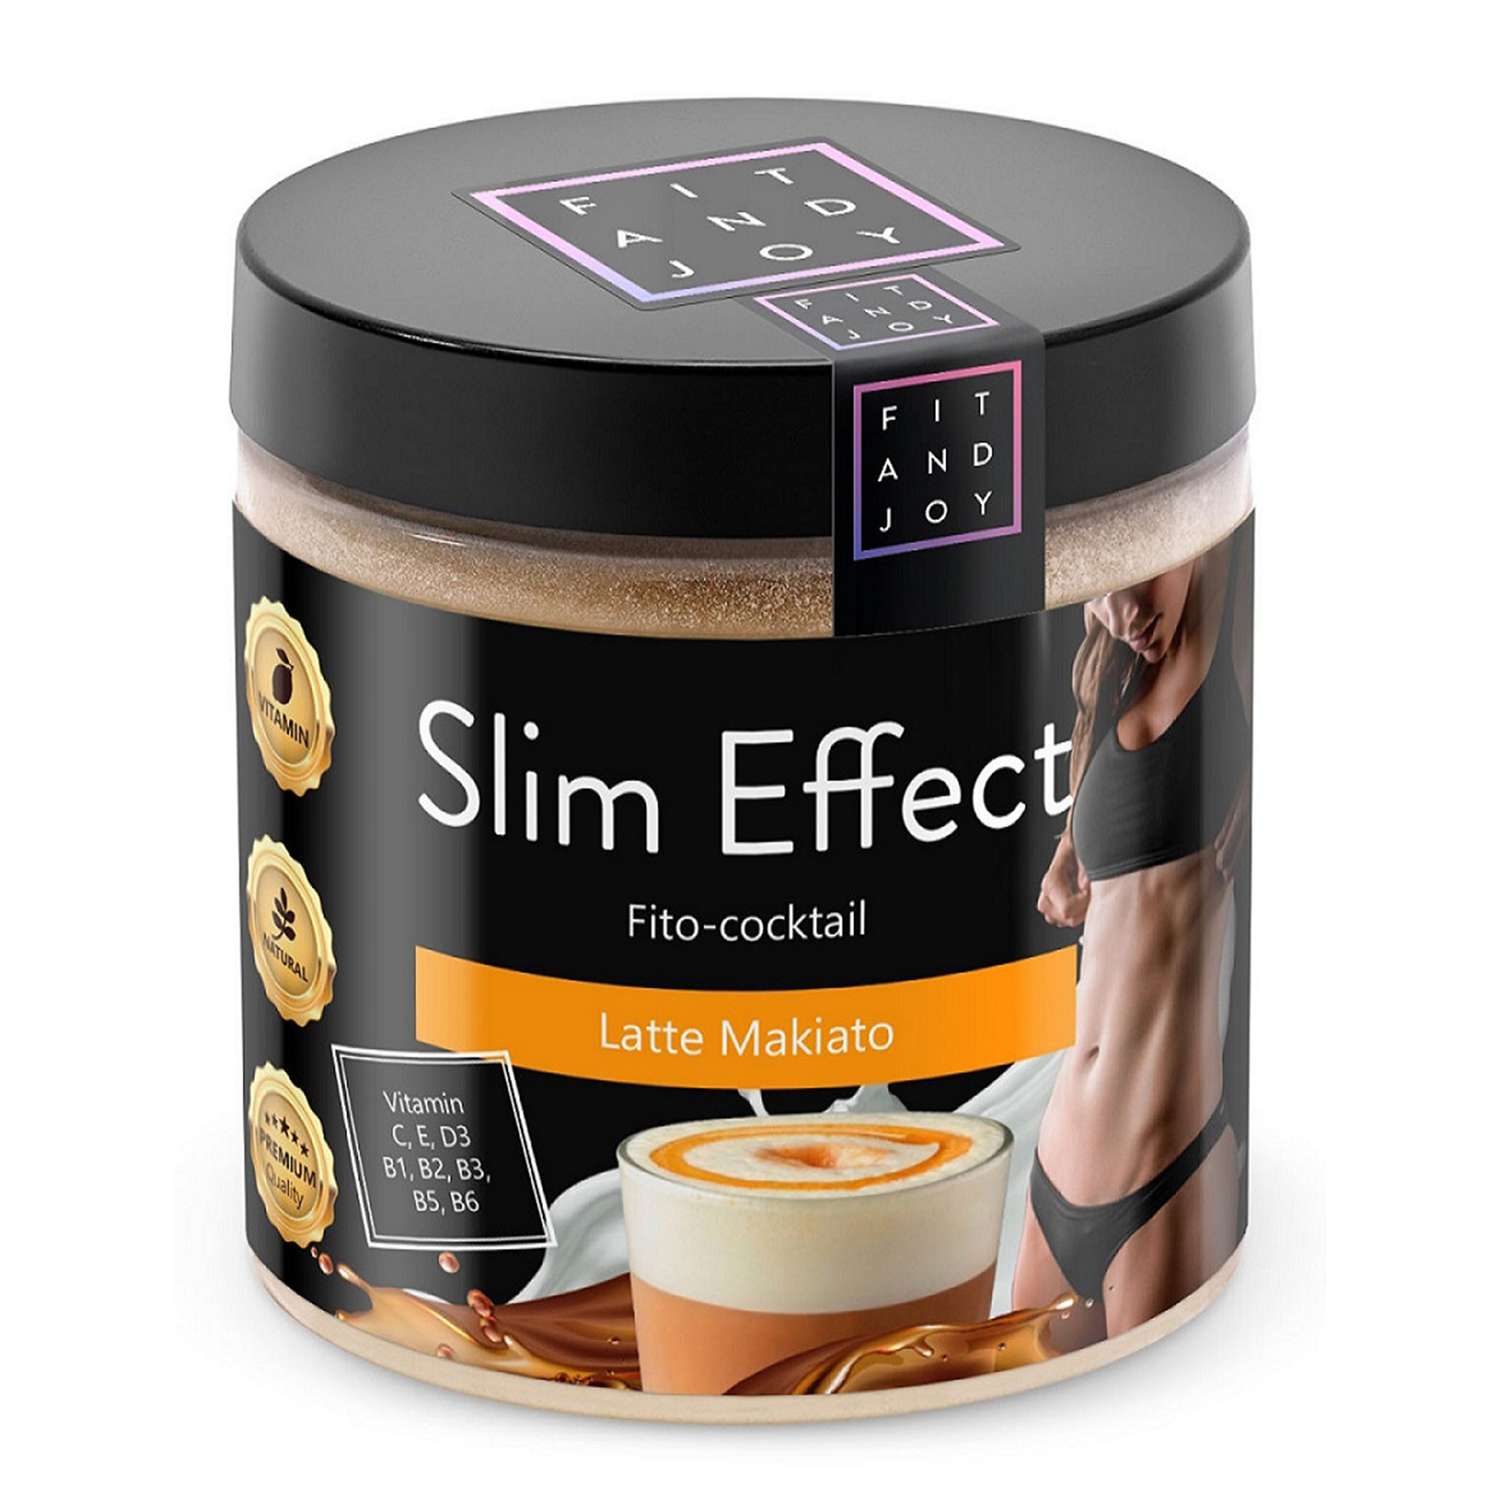 Фитококтейль FIT AND JOY Slim Effect для похудения - фото 1